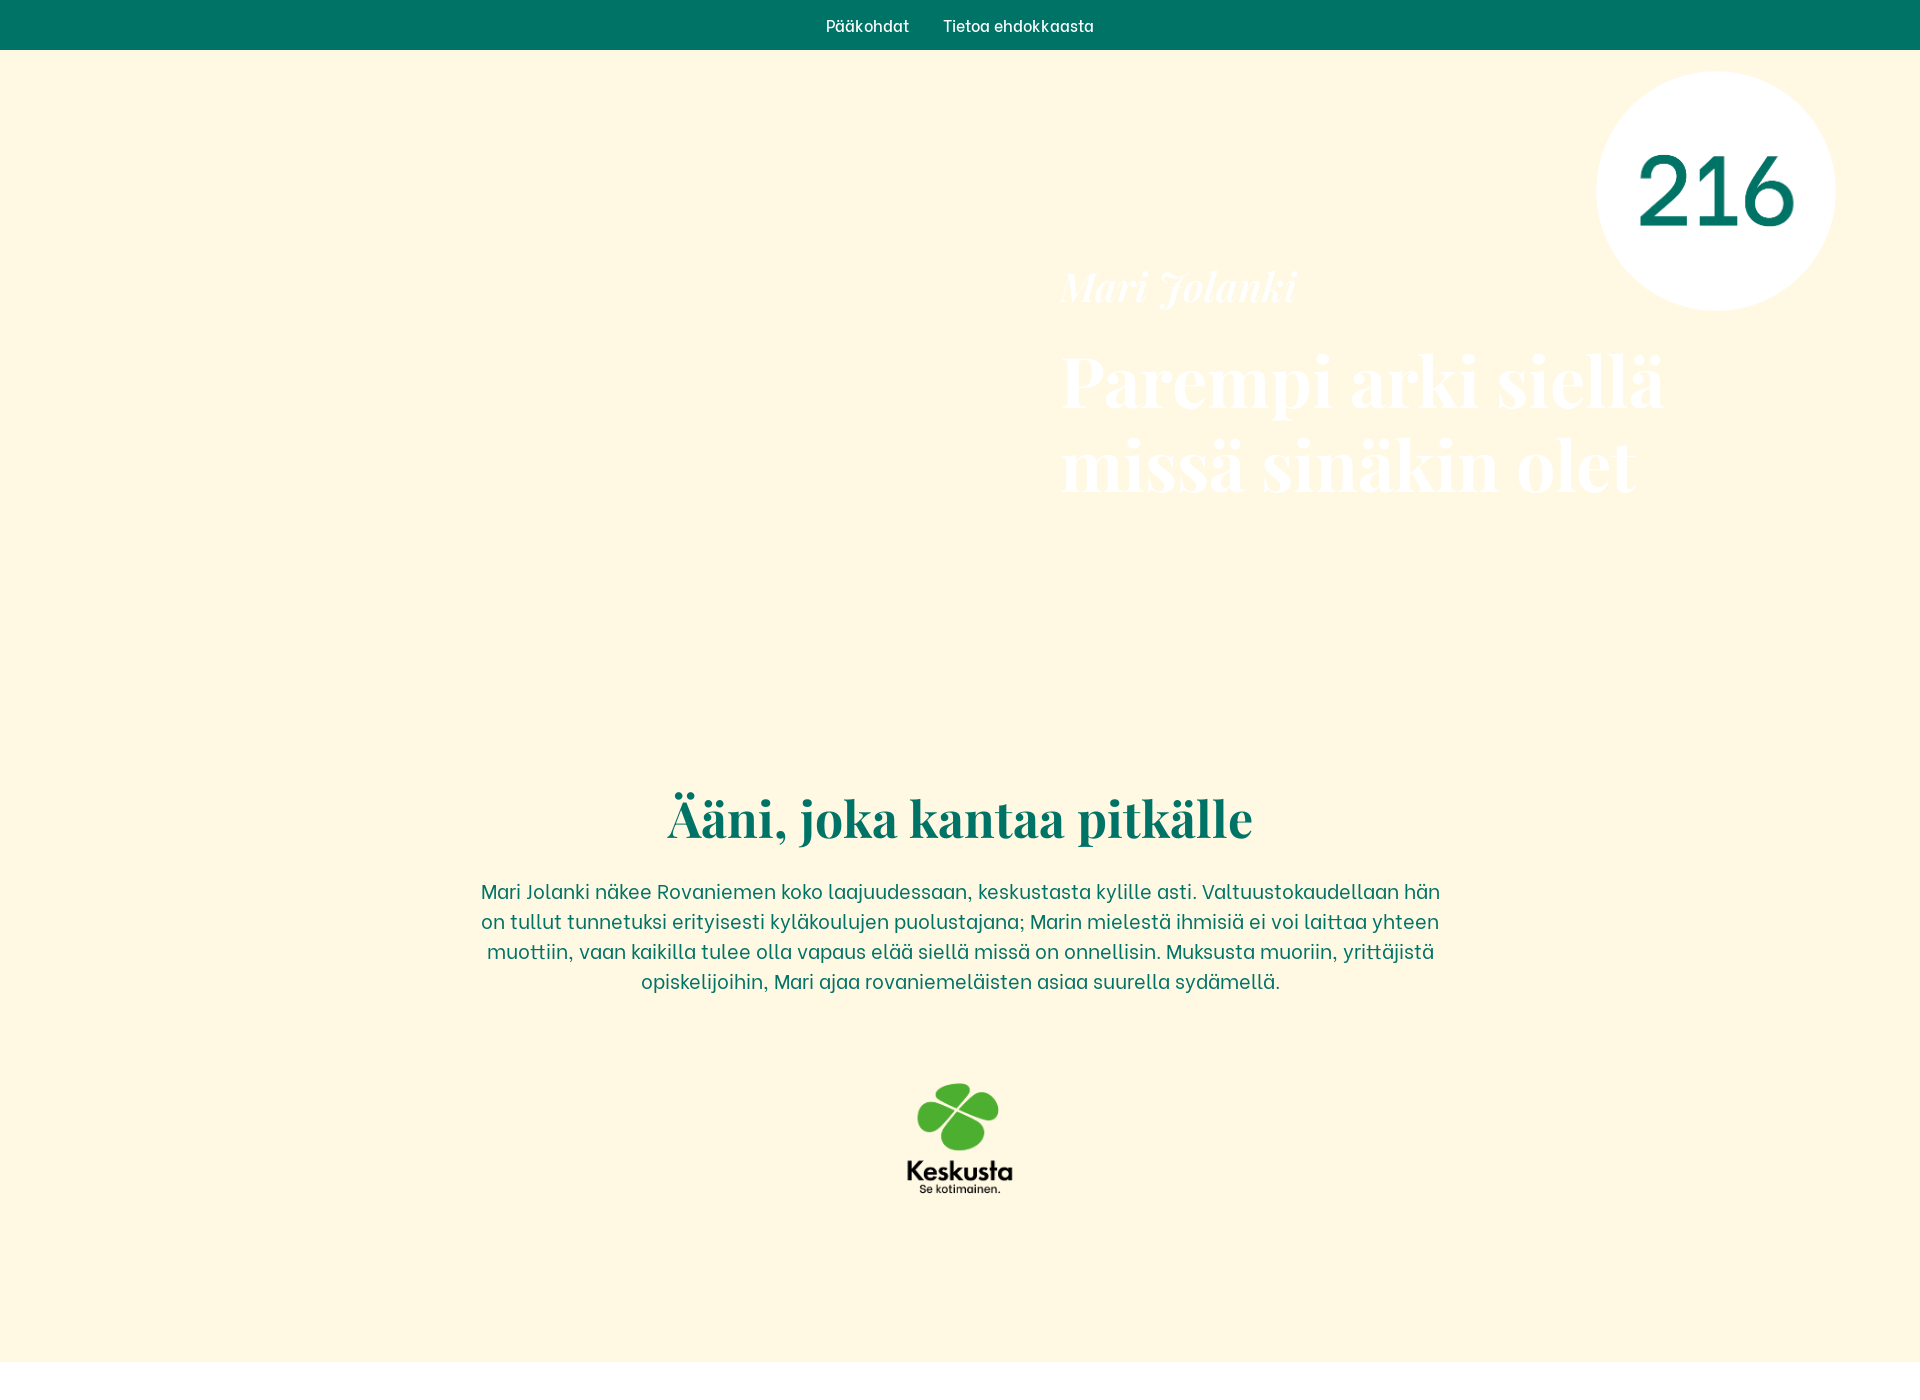 Skärmdump för marijolanki.fi